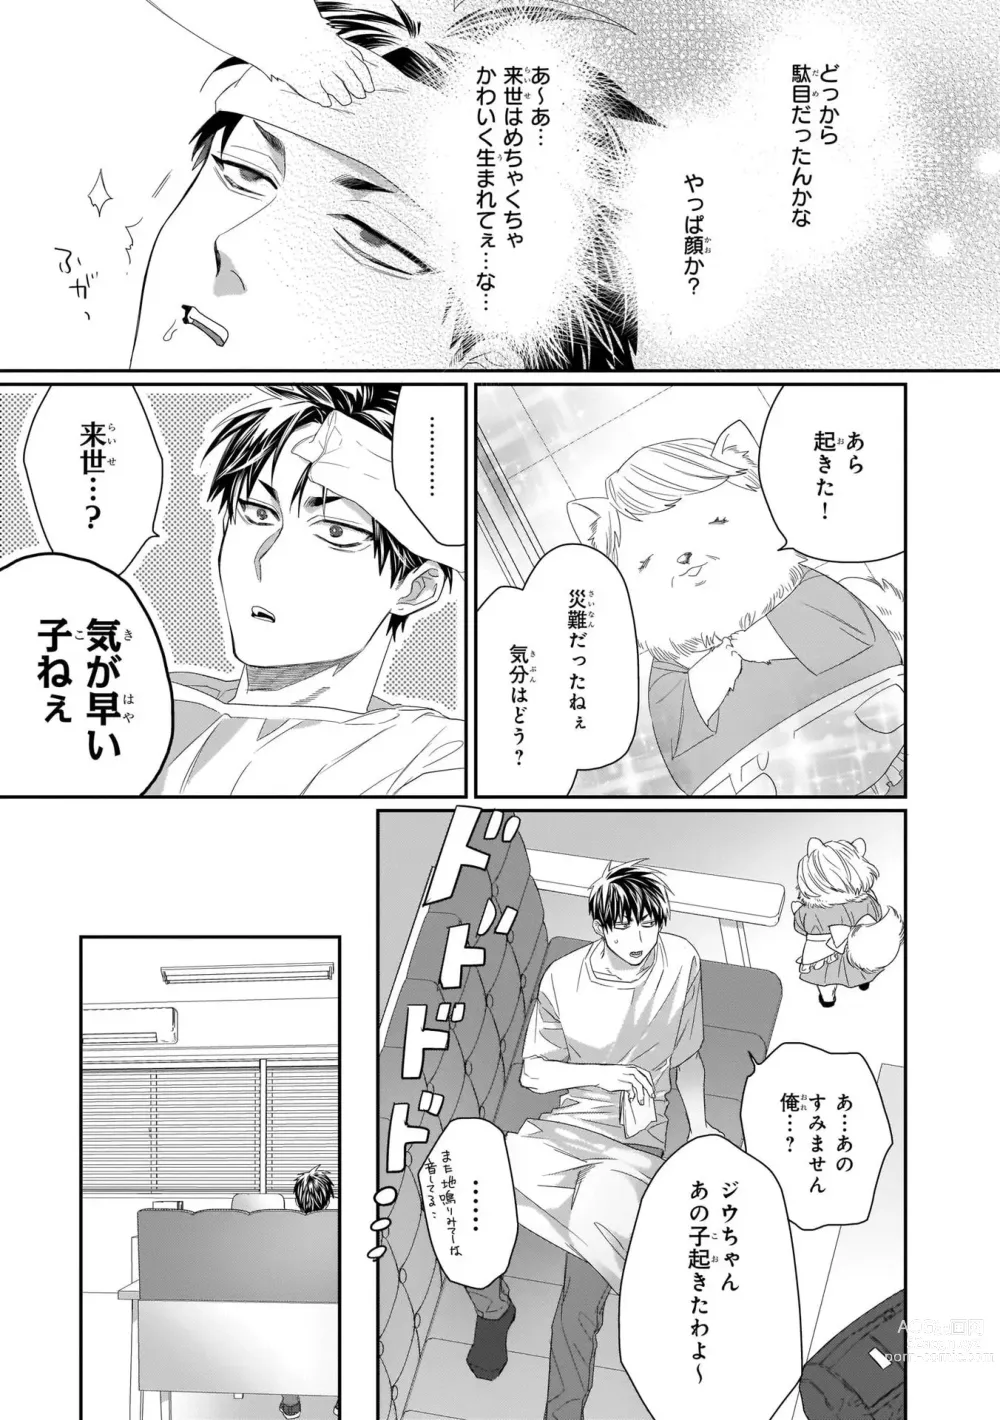 Page 11 of manga Torano Tantei Jimusho e Youkoso 1-5